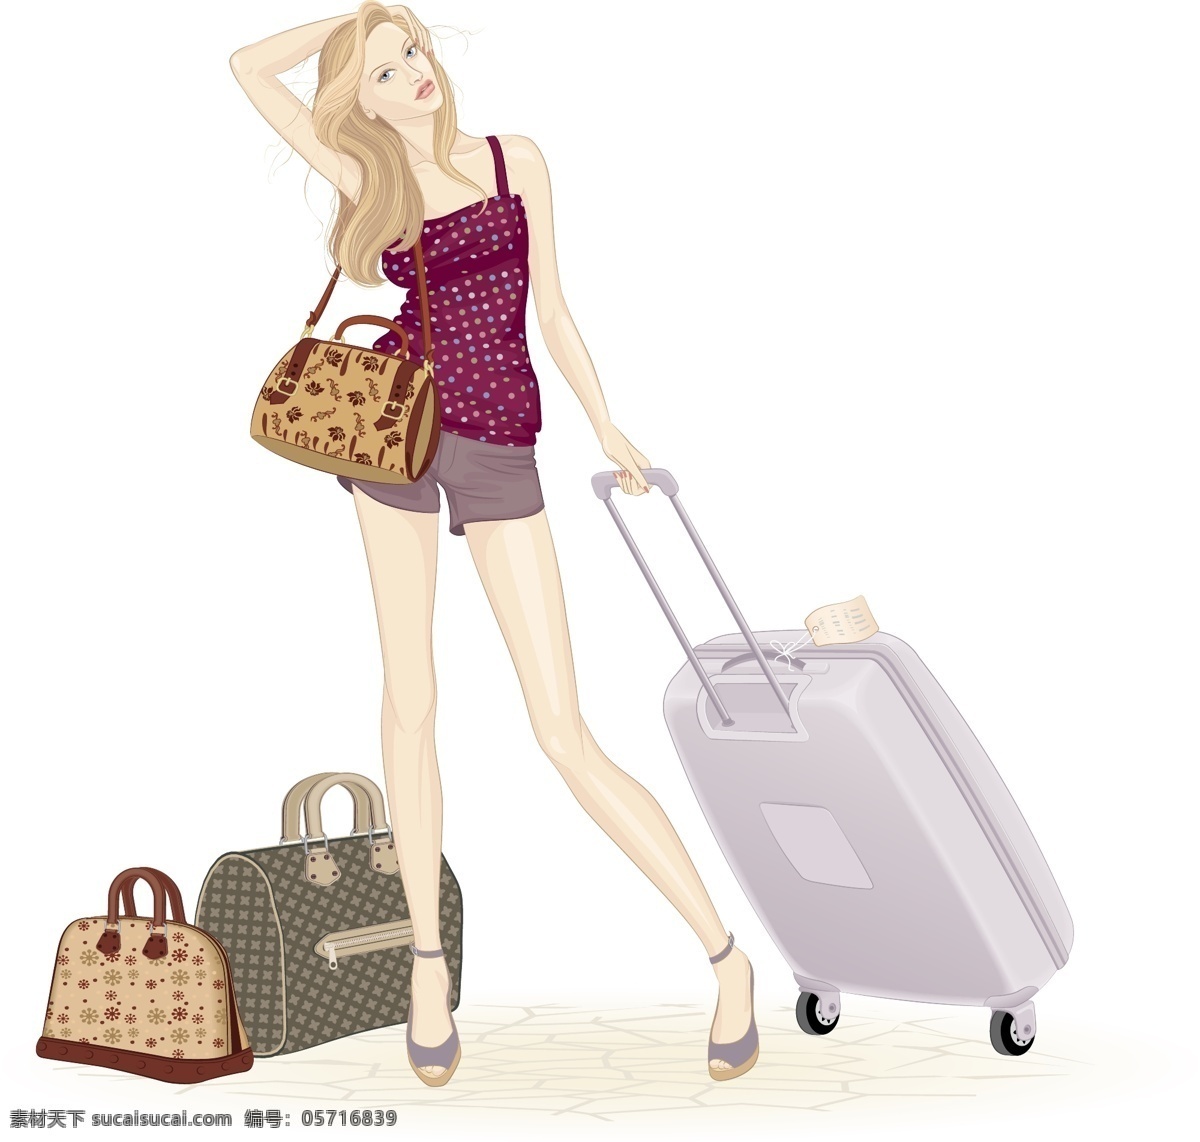 夏日 度假 女郎 eps格式 彩绘 插画 旅行 旅行箱 女子 矢量图 夏季 矢量 矢量人物